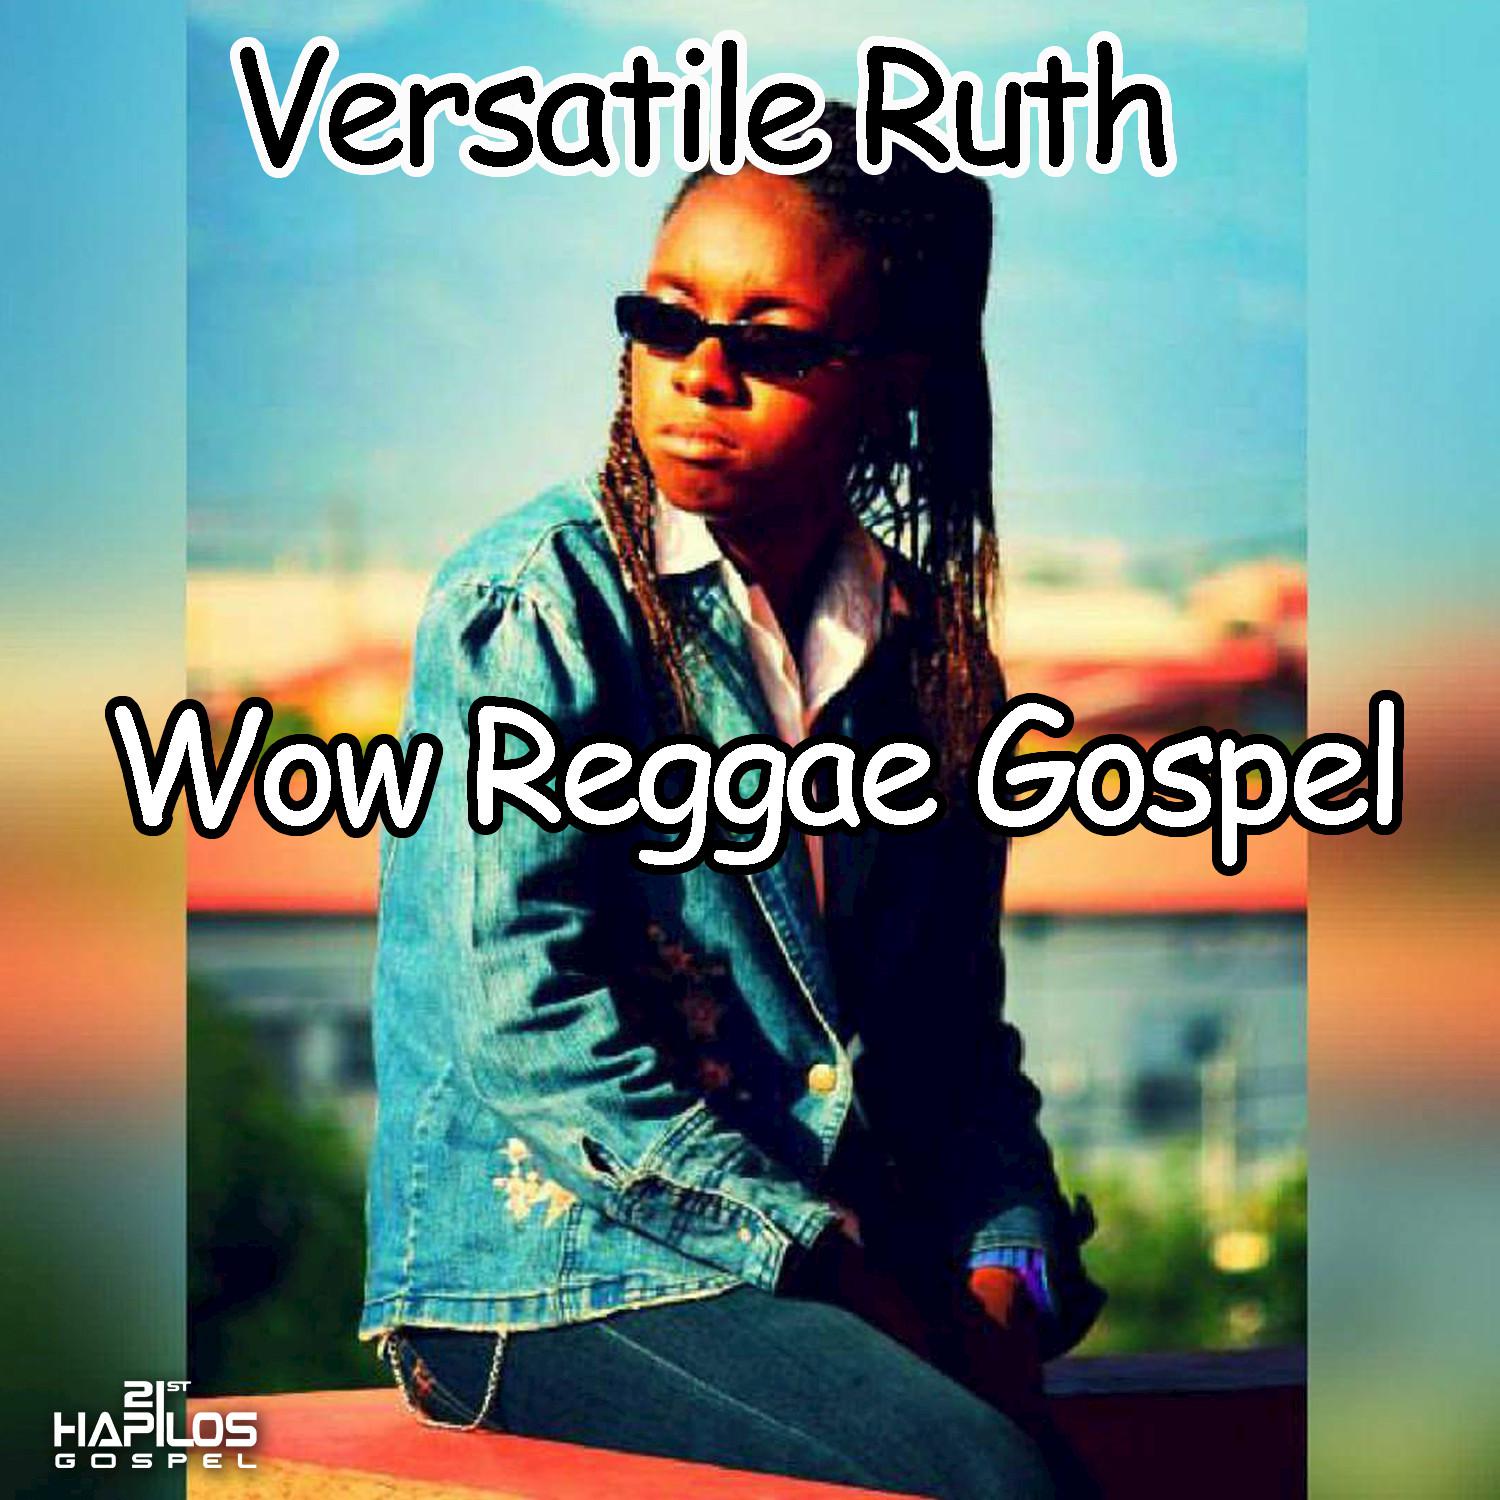 Wow Reggae Gospel